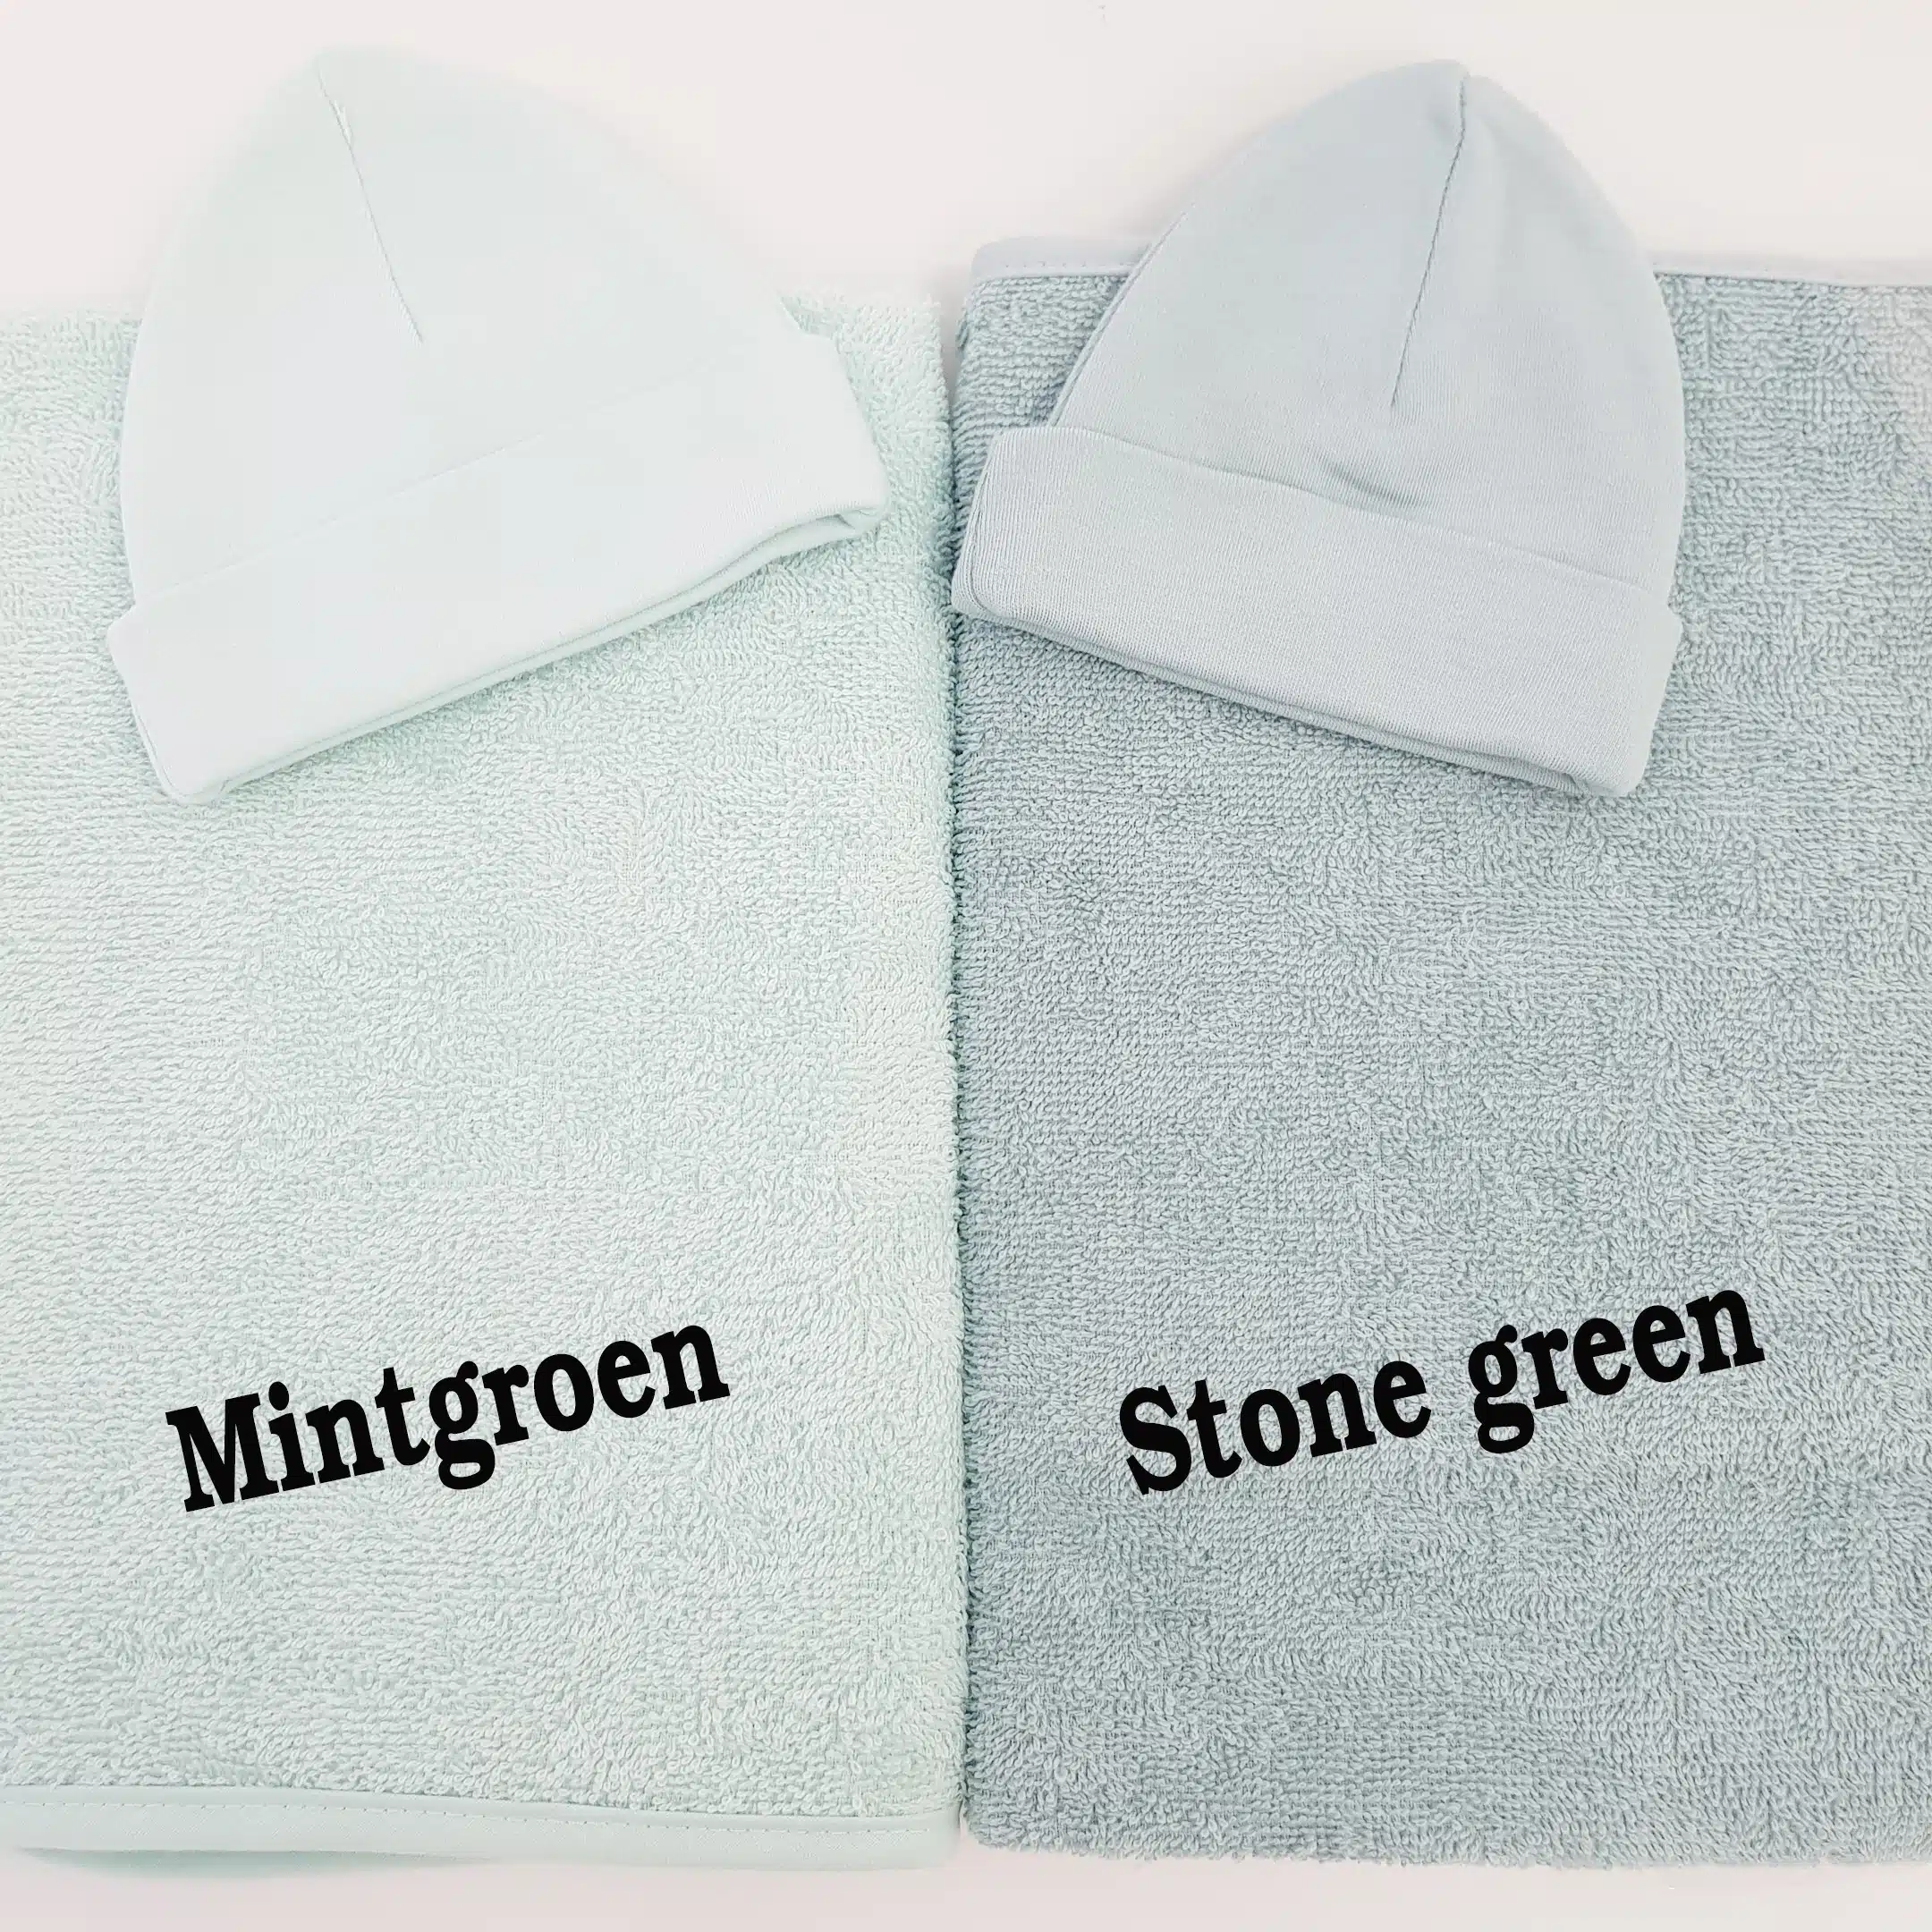 knal Top Occlusie Handdoek met naam - bestel je nu bij Lieve Labels.nl